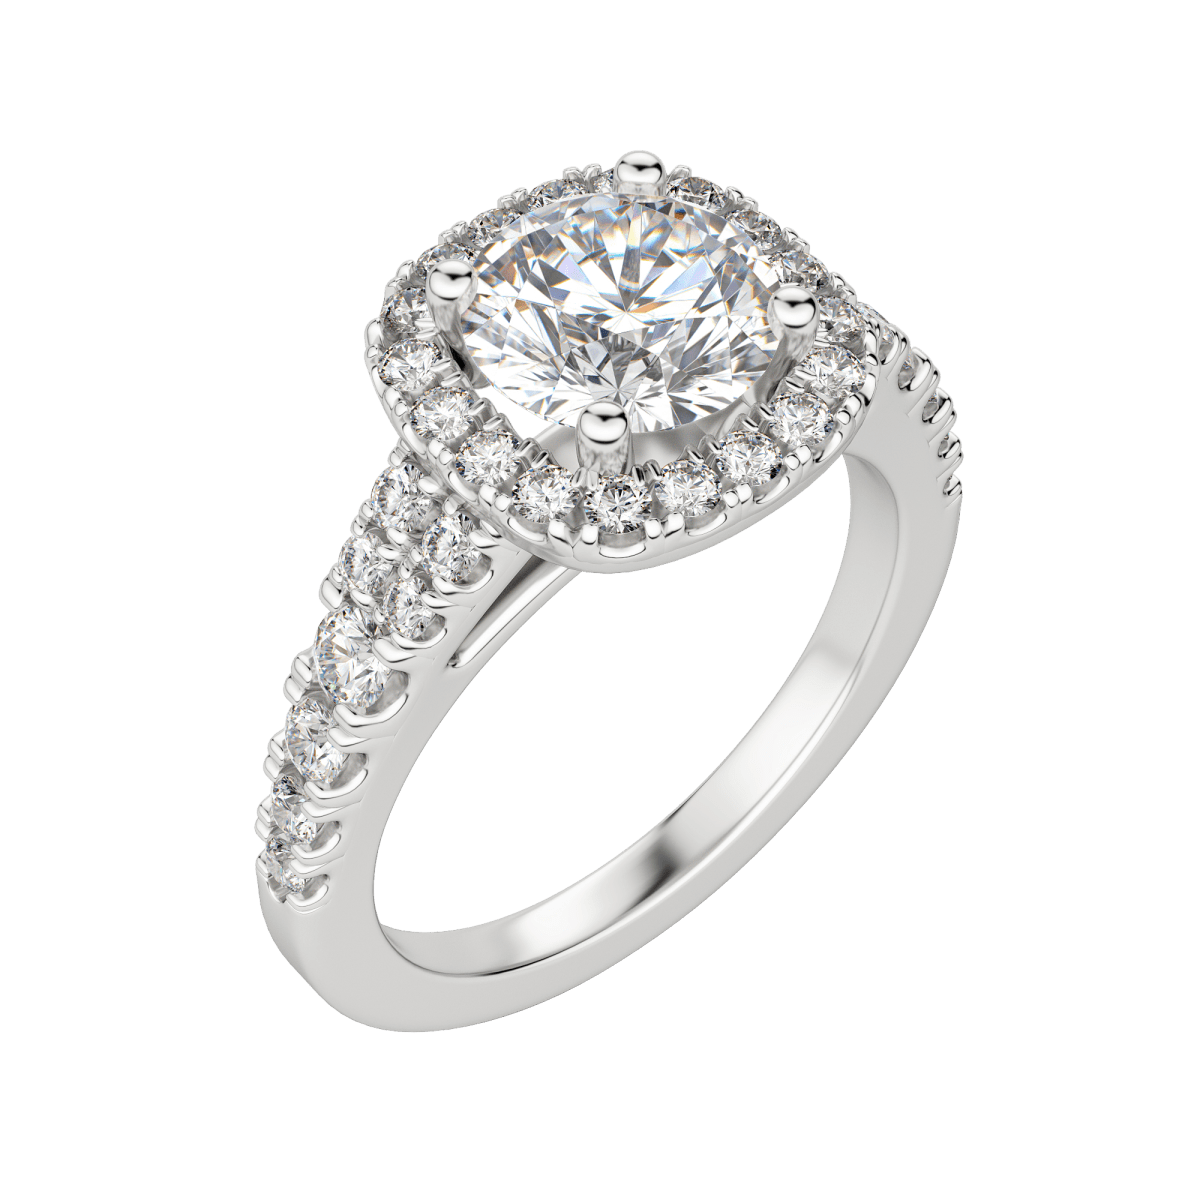 Aura round brilliant diamond ring in platinum